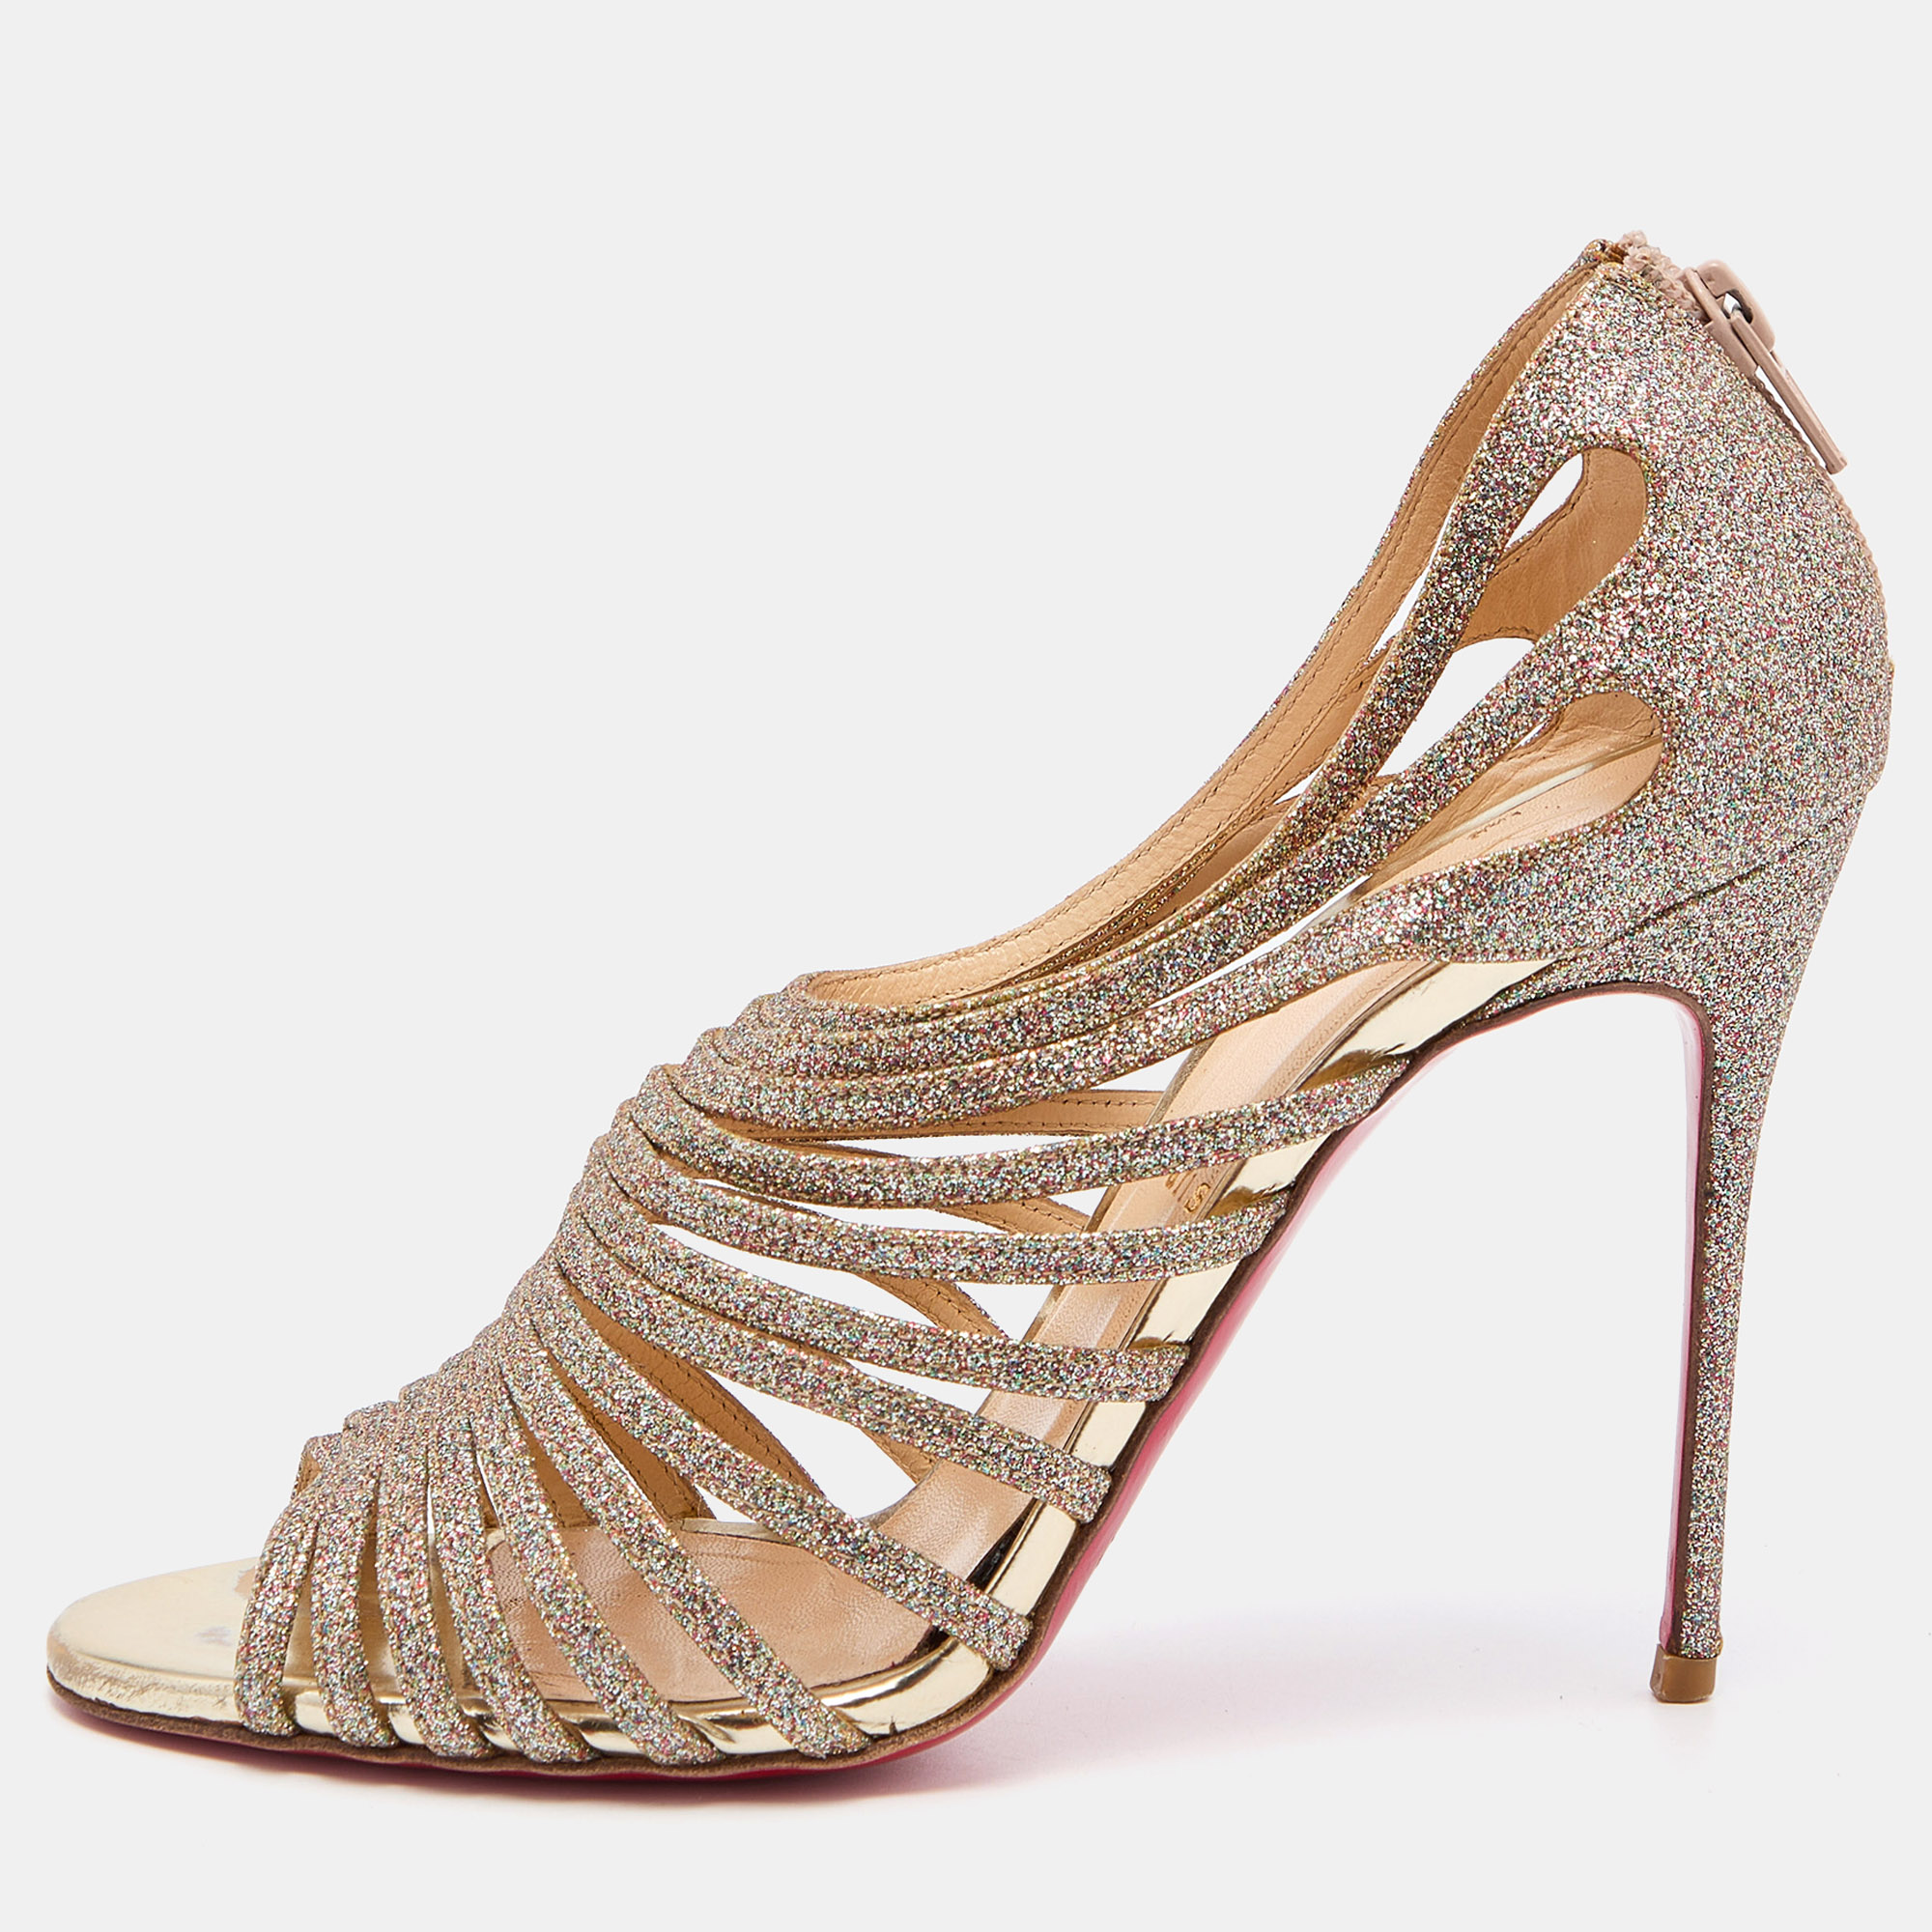 Pre-owned Christian Louboutin Multicolor Glitter Mul Tibrida Strappy Sandals Size 38.5